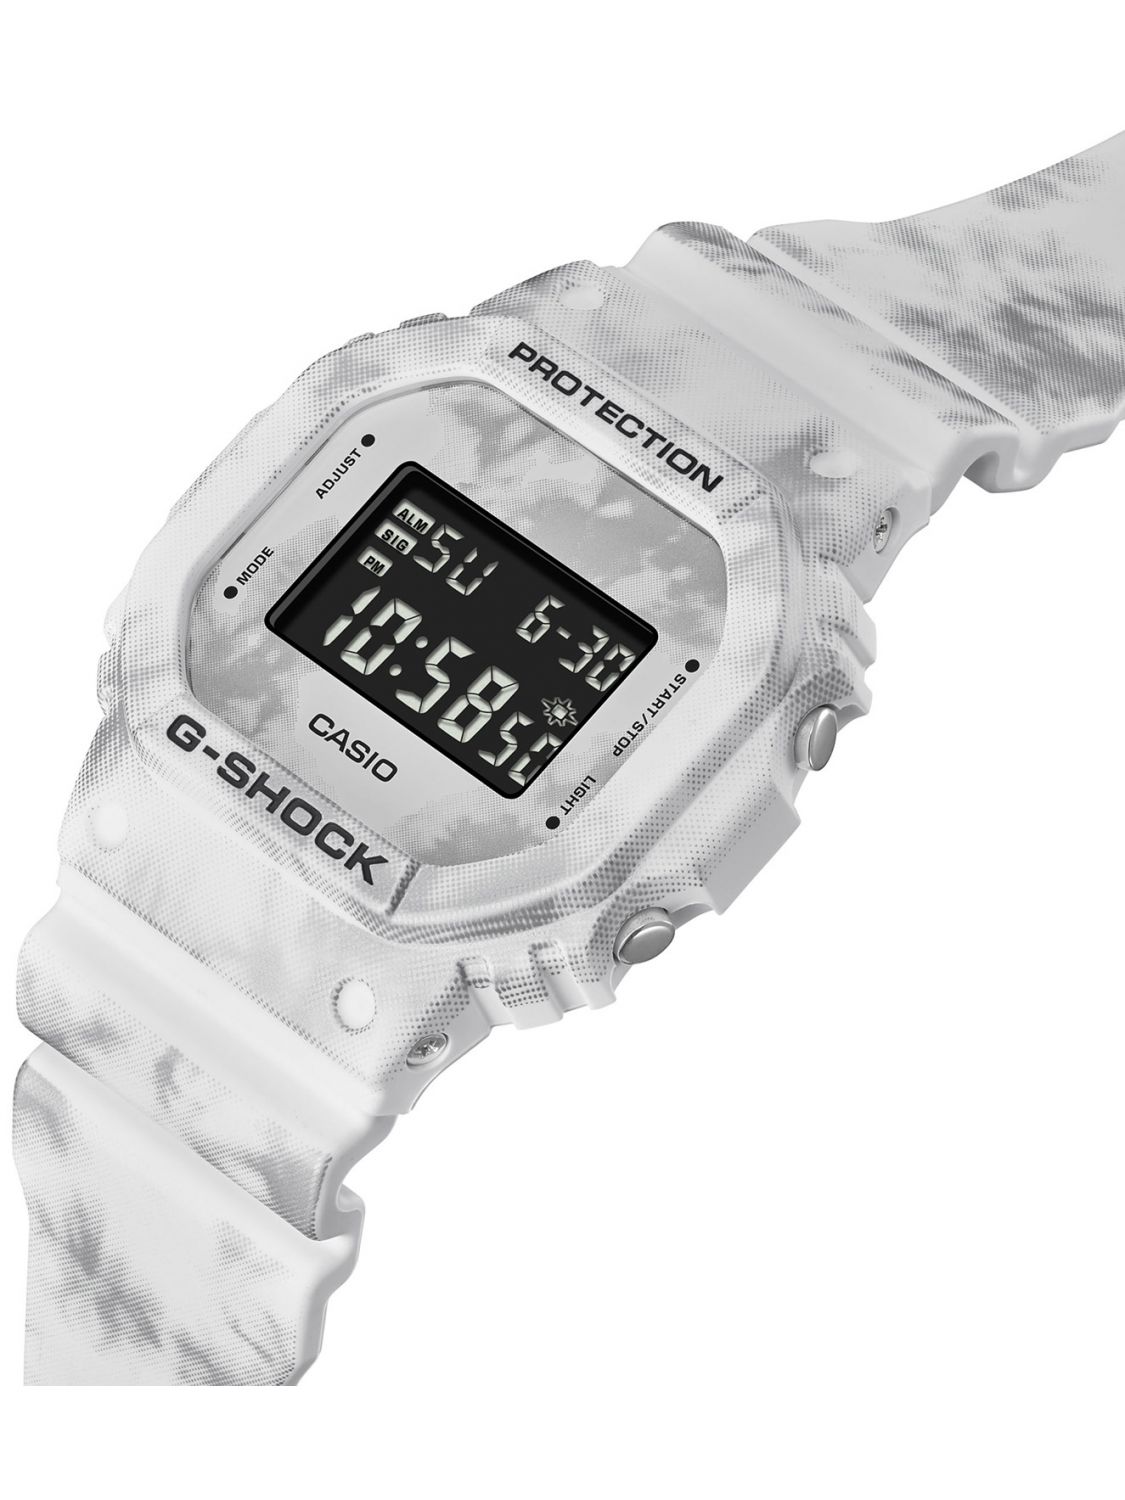 Casio DW-5600GC-7ER G-Shock The Origin Digital Watch White Marbled